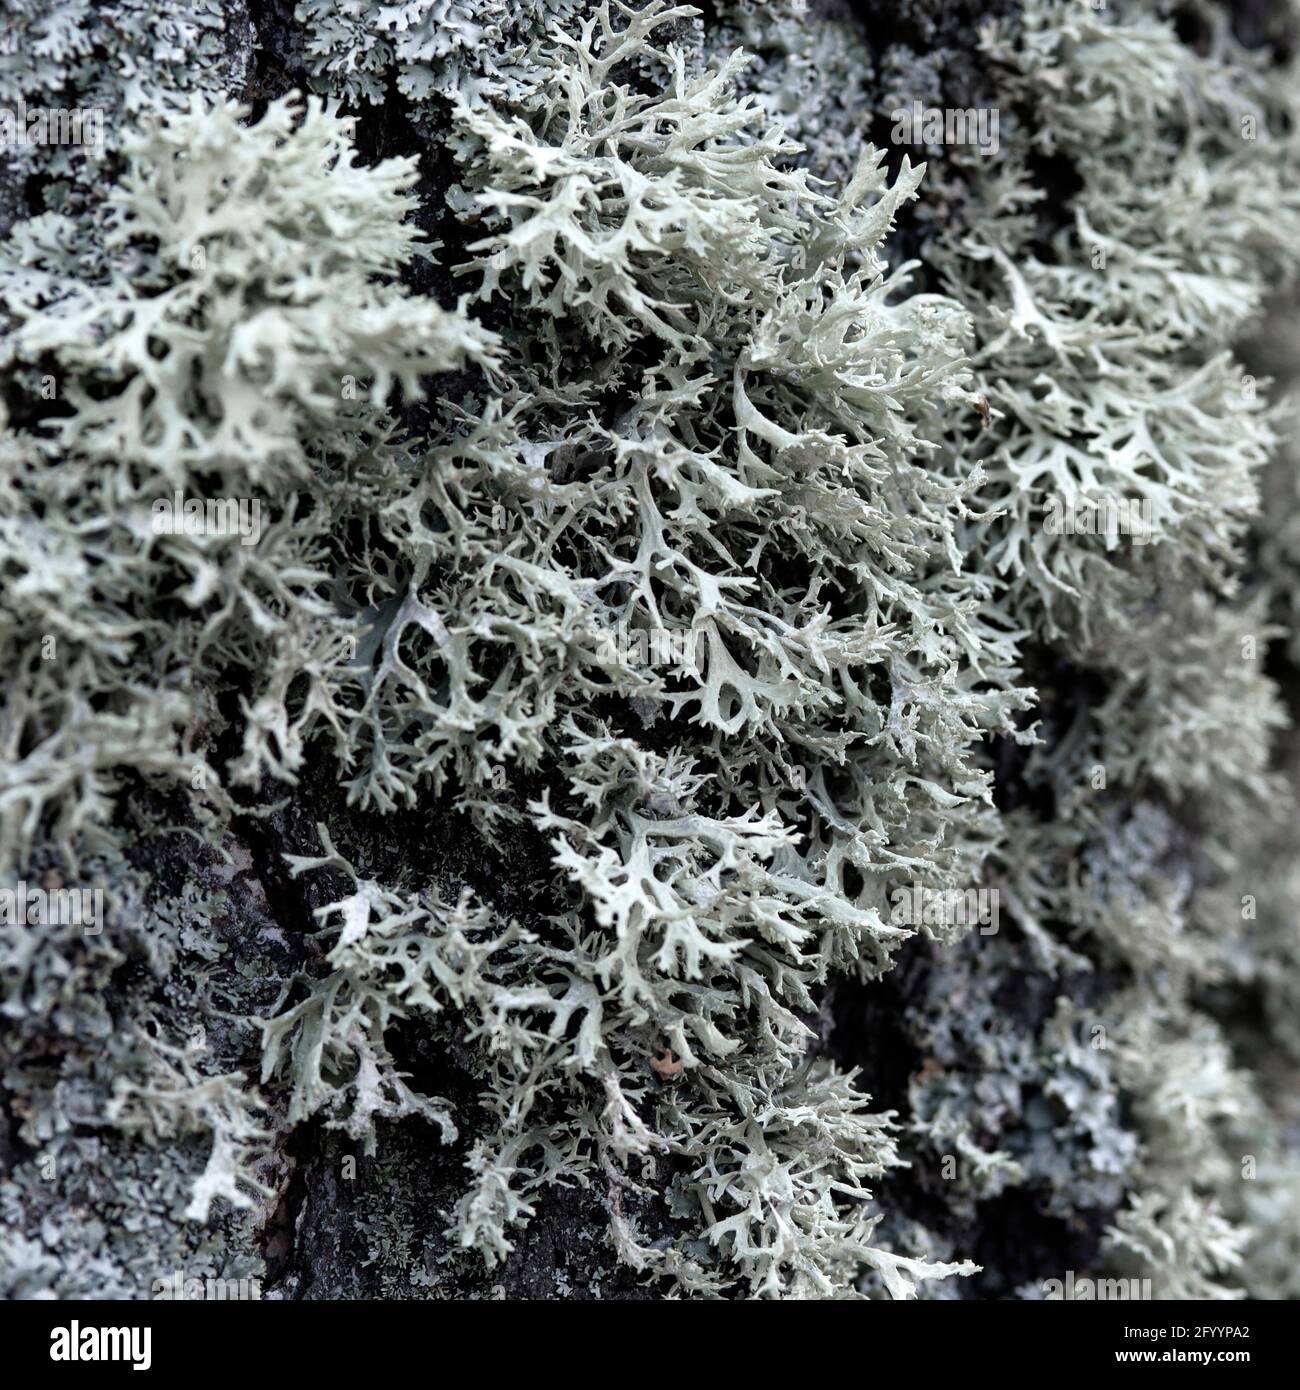 Evernia prunastri gray lichen on a tree trunk Stock Photo